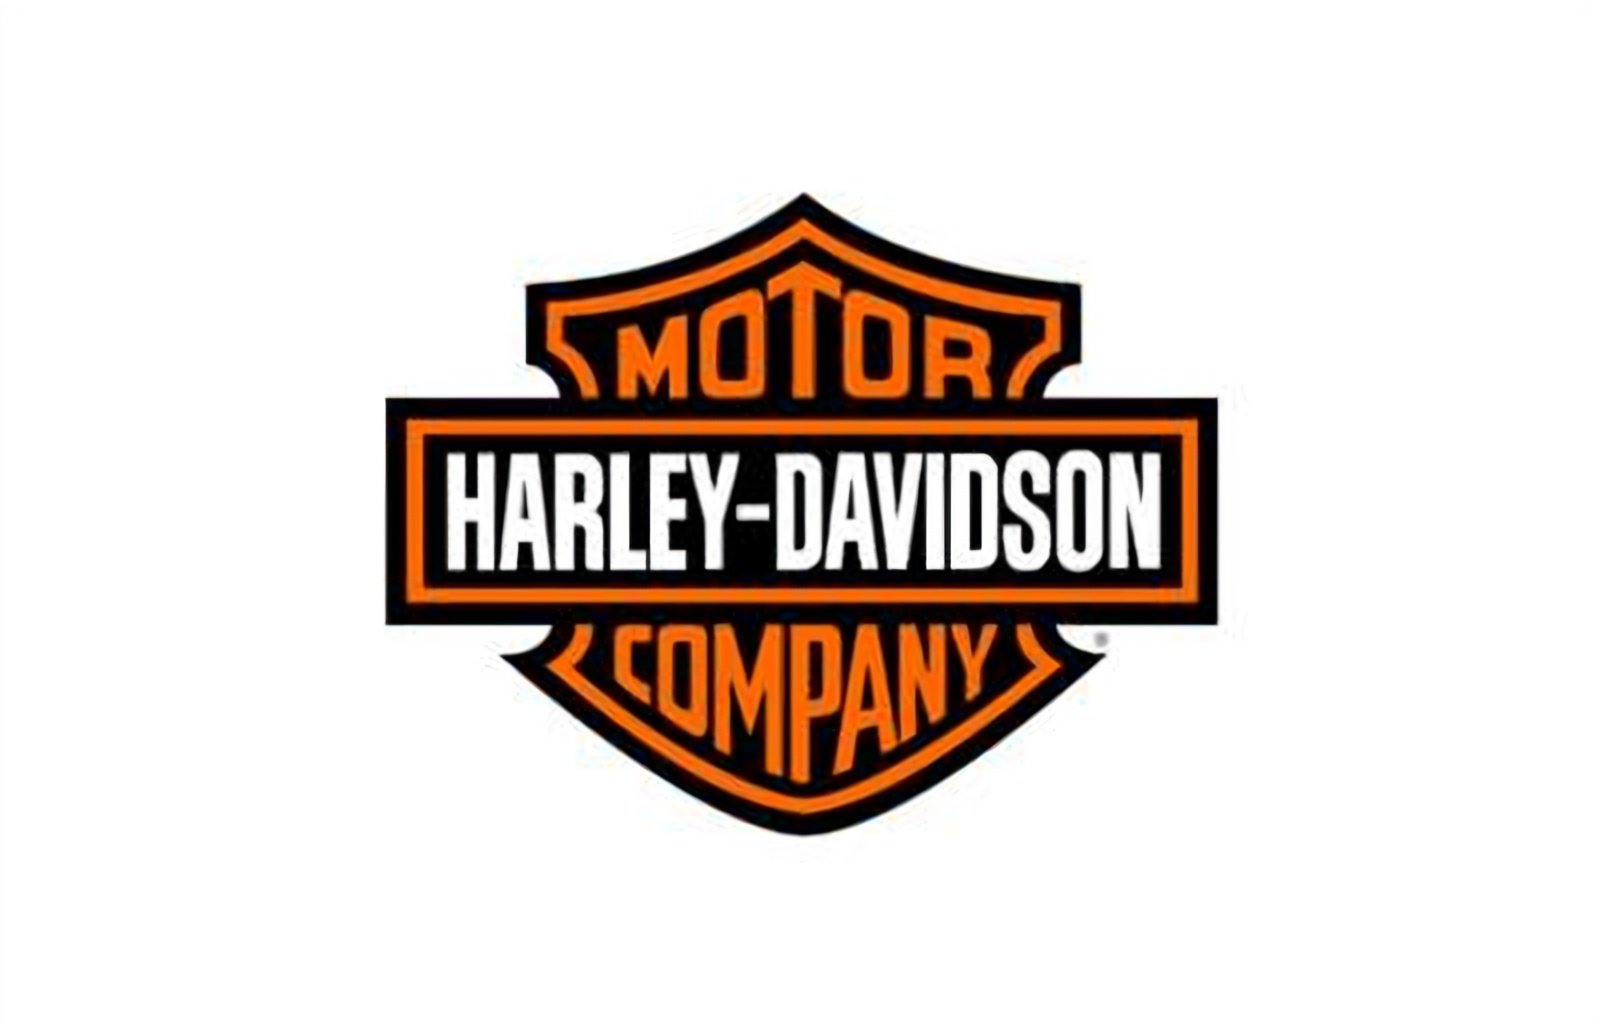 logo della collezione batterie harley-davidson di puntobatterie